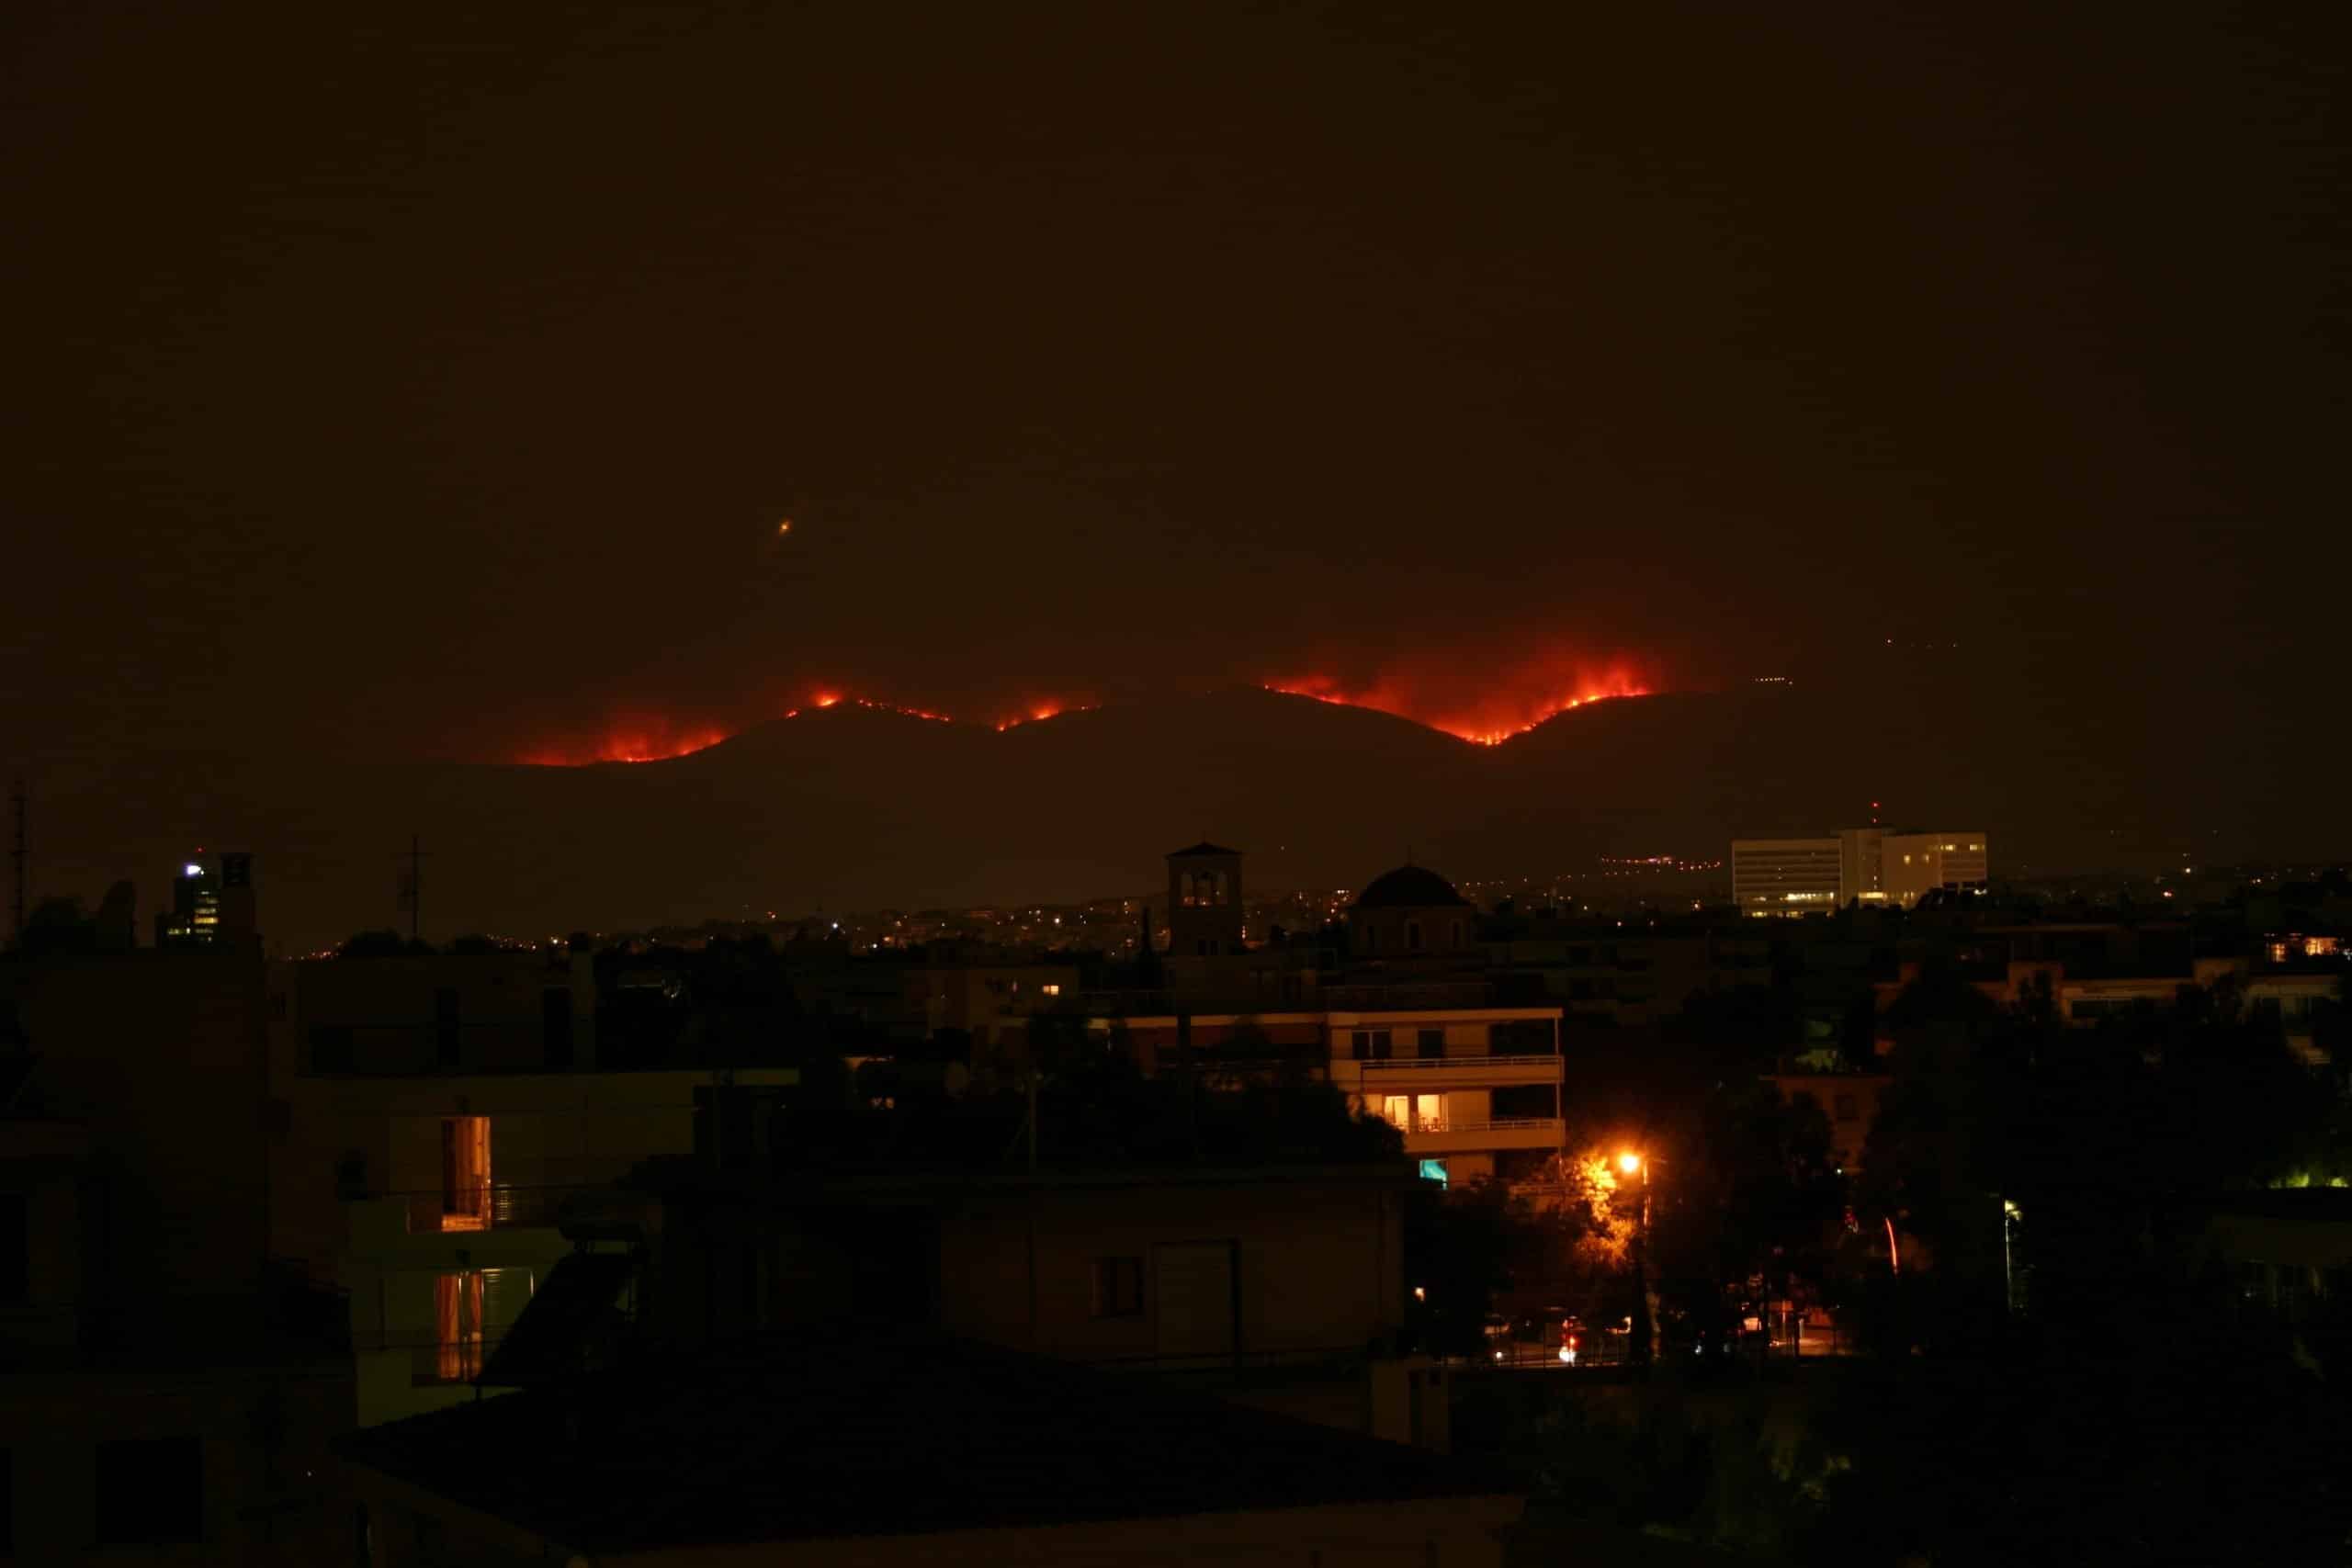 Imagini dramatice din Grecia devastată de incendii. Atena este înconjurată de flăcări